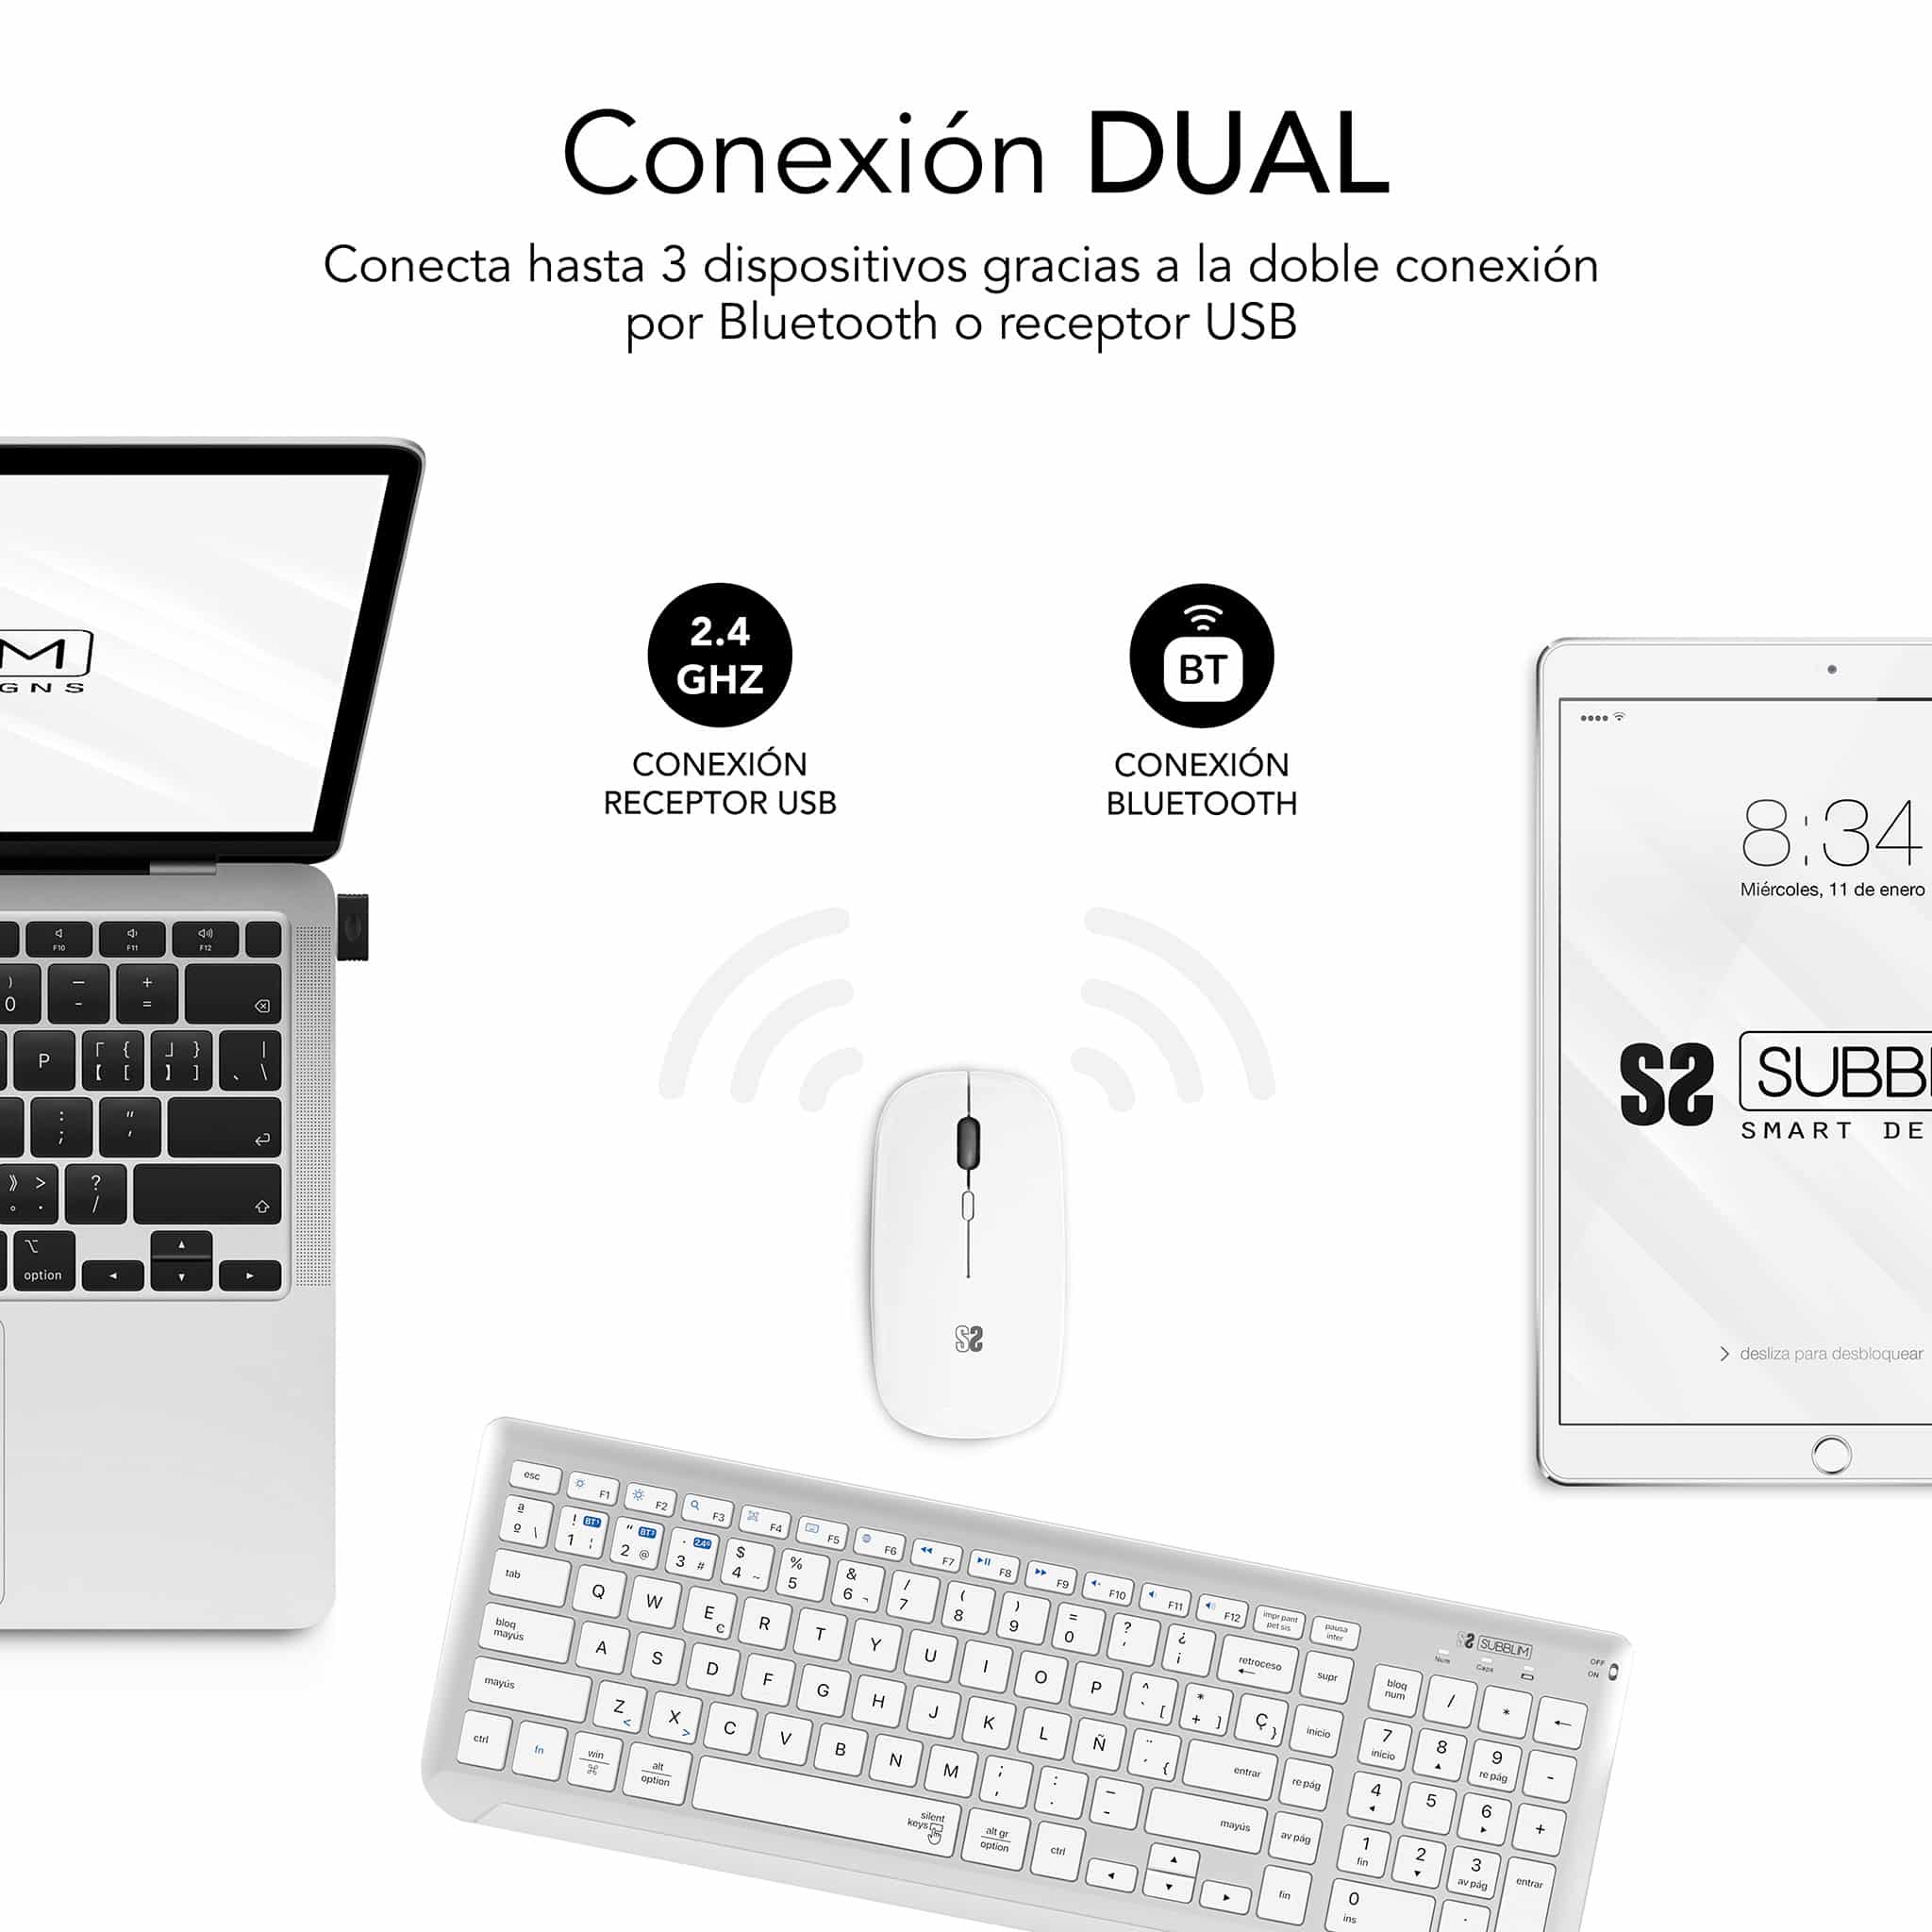 ✅ Conectividad dual Radiofrecuencia con receptor USB + Bluetooth